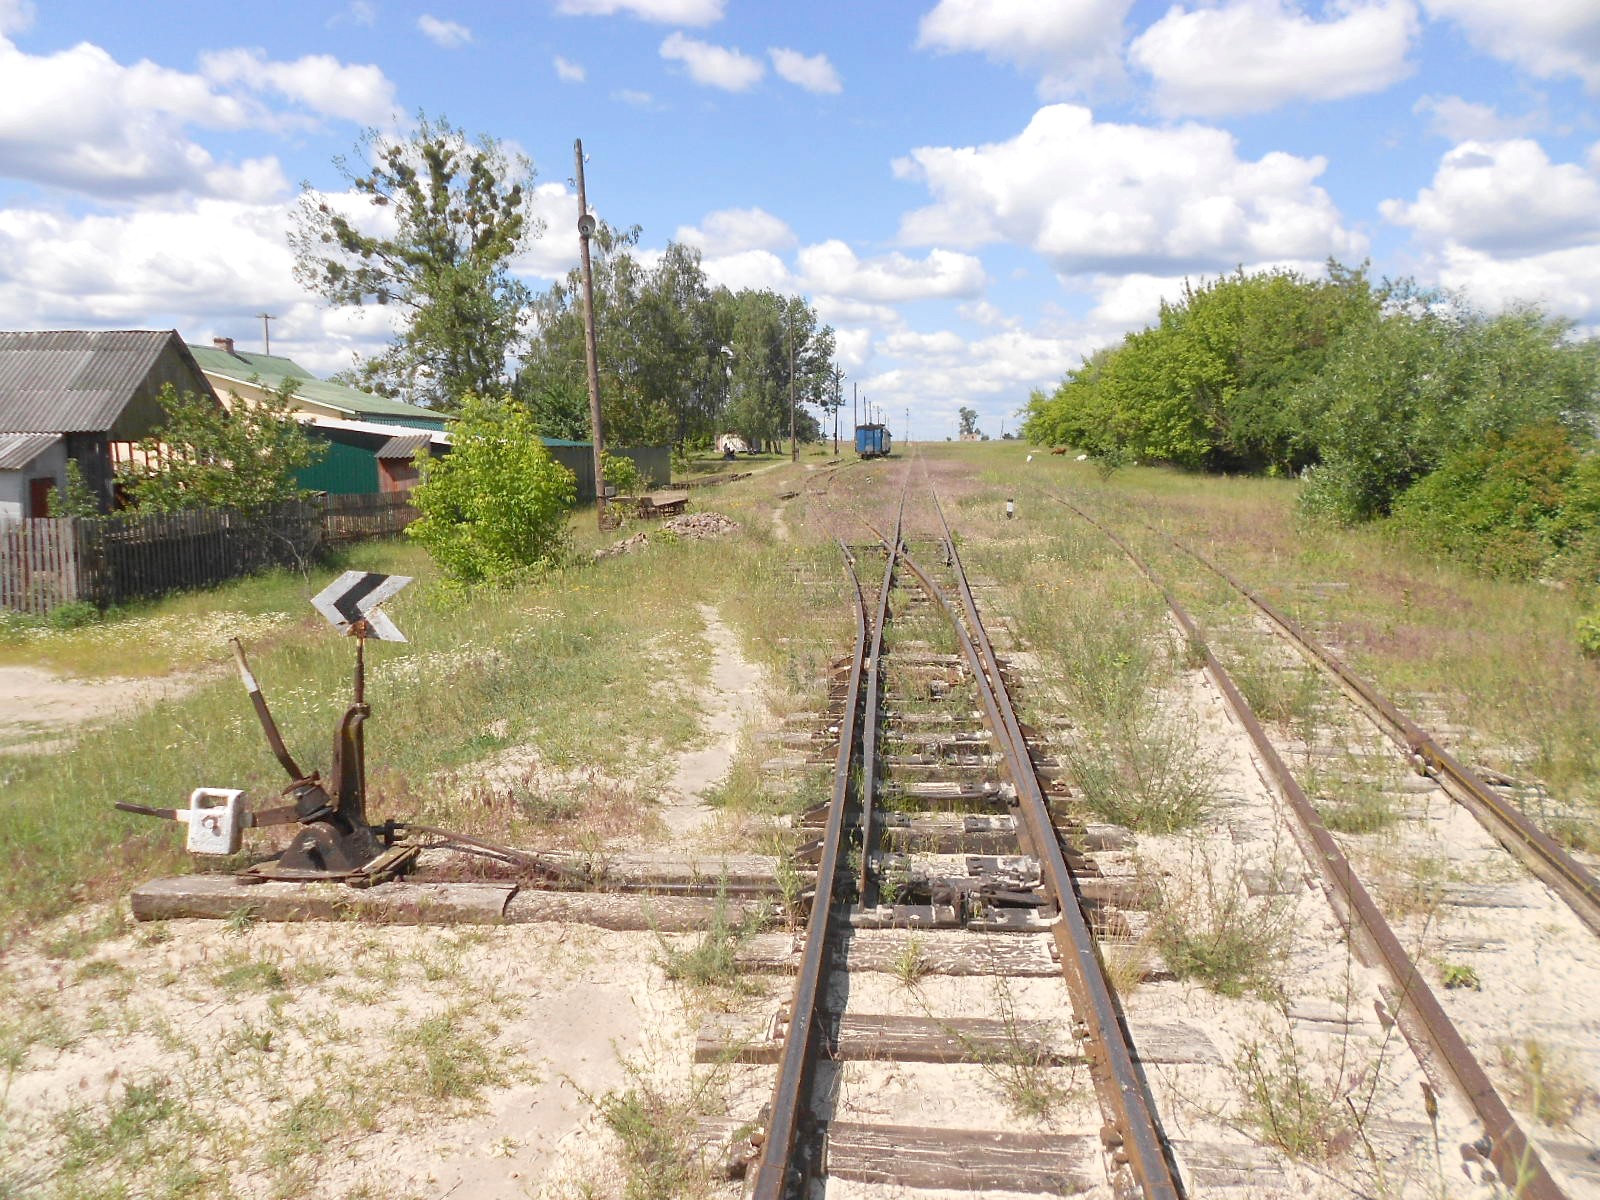 Узкоколейная железная дорога Антоновка — Заречное — фотографии, сделанные в 2016 году (часть 11)